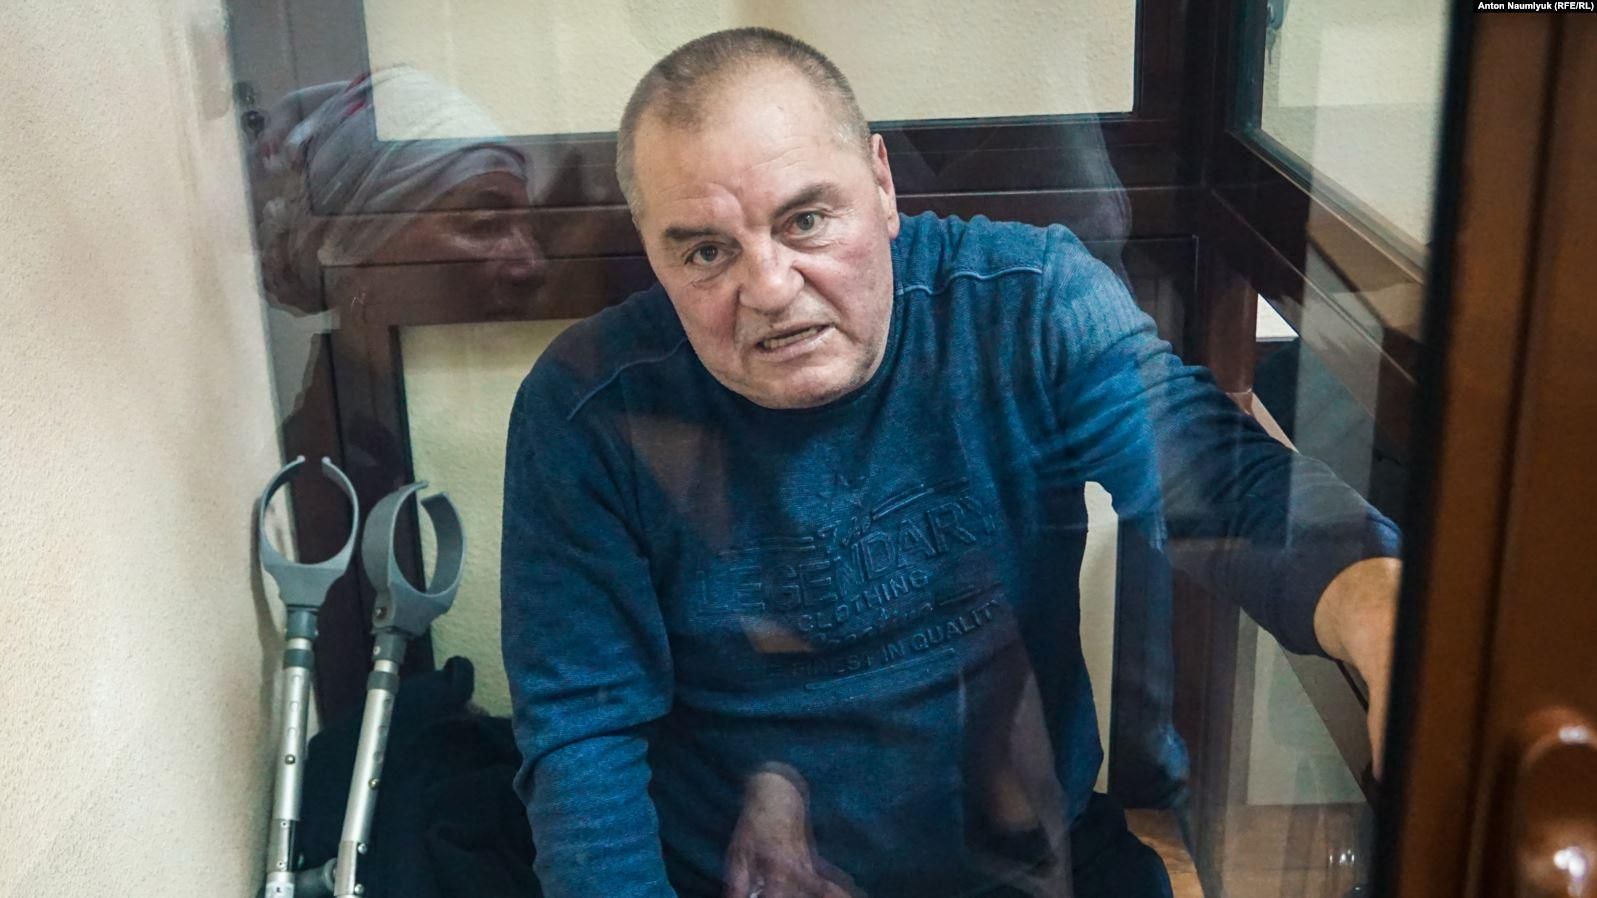 Более безболезненной будет голодная смерть в СИЗО, – политзаключенный Бекиров объявит голодовку